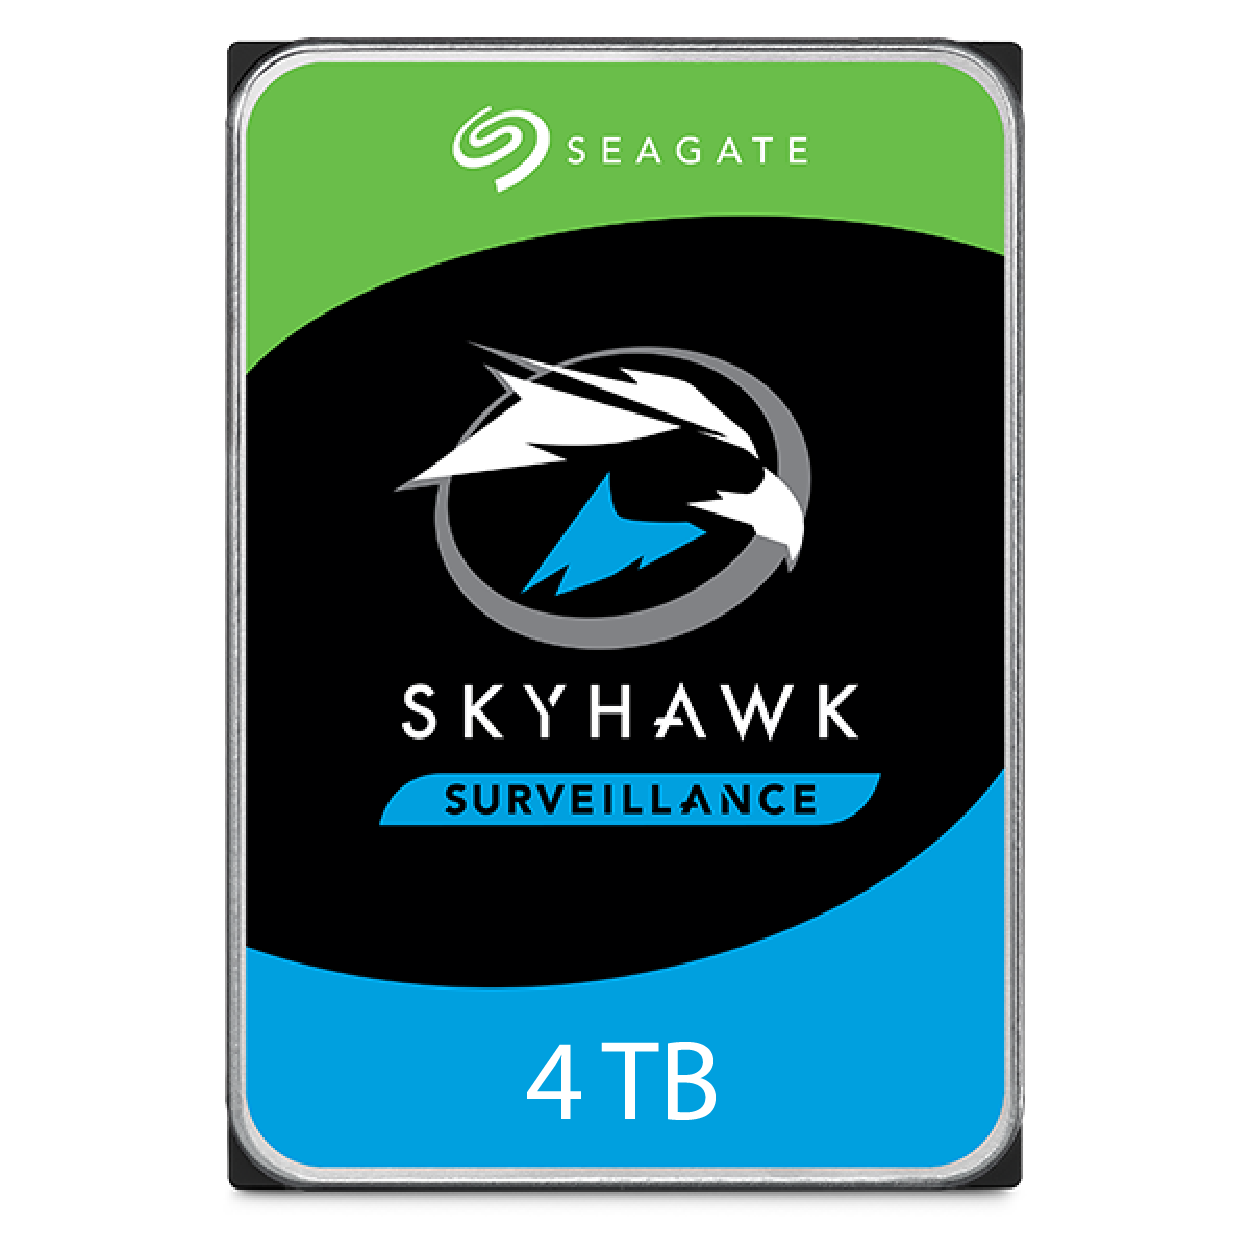 Seagate Skyhawk 4 TB 7/24 Güvenlik Harddiski ITH